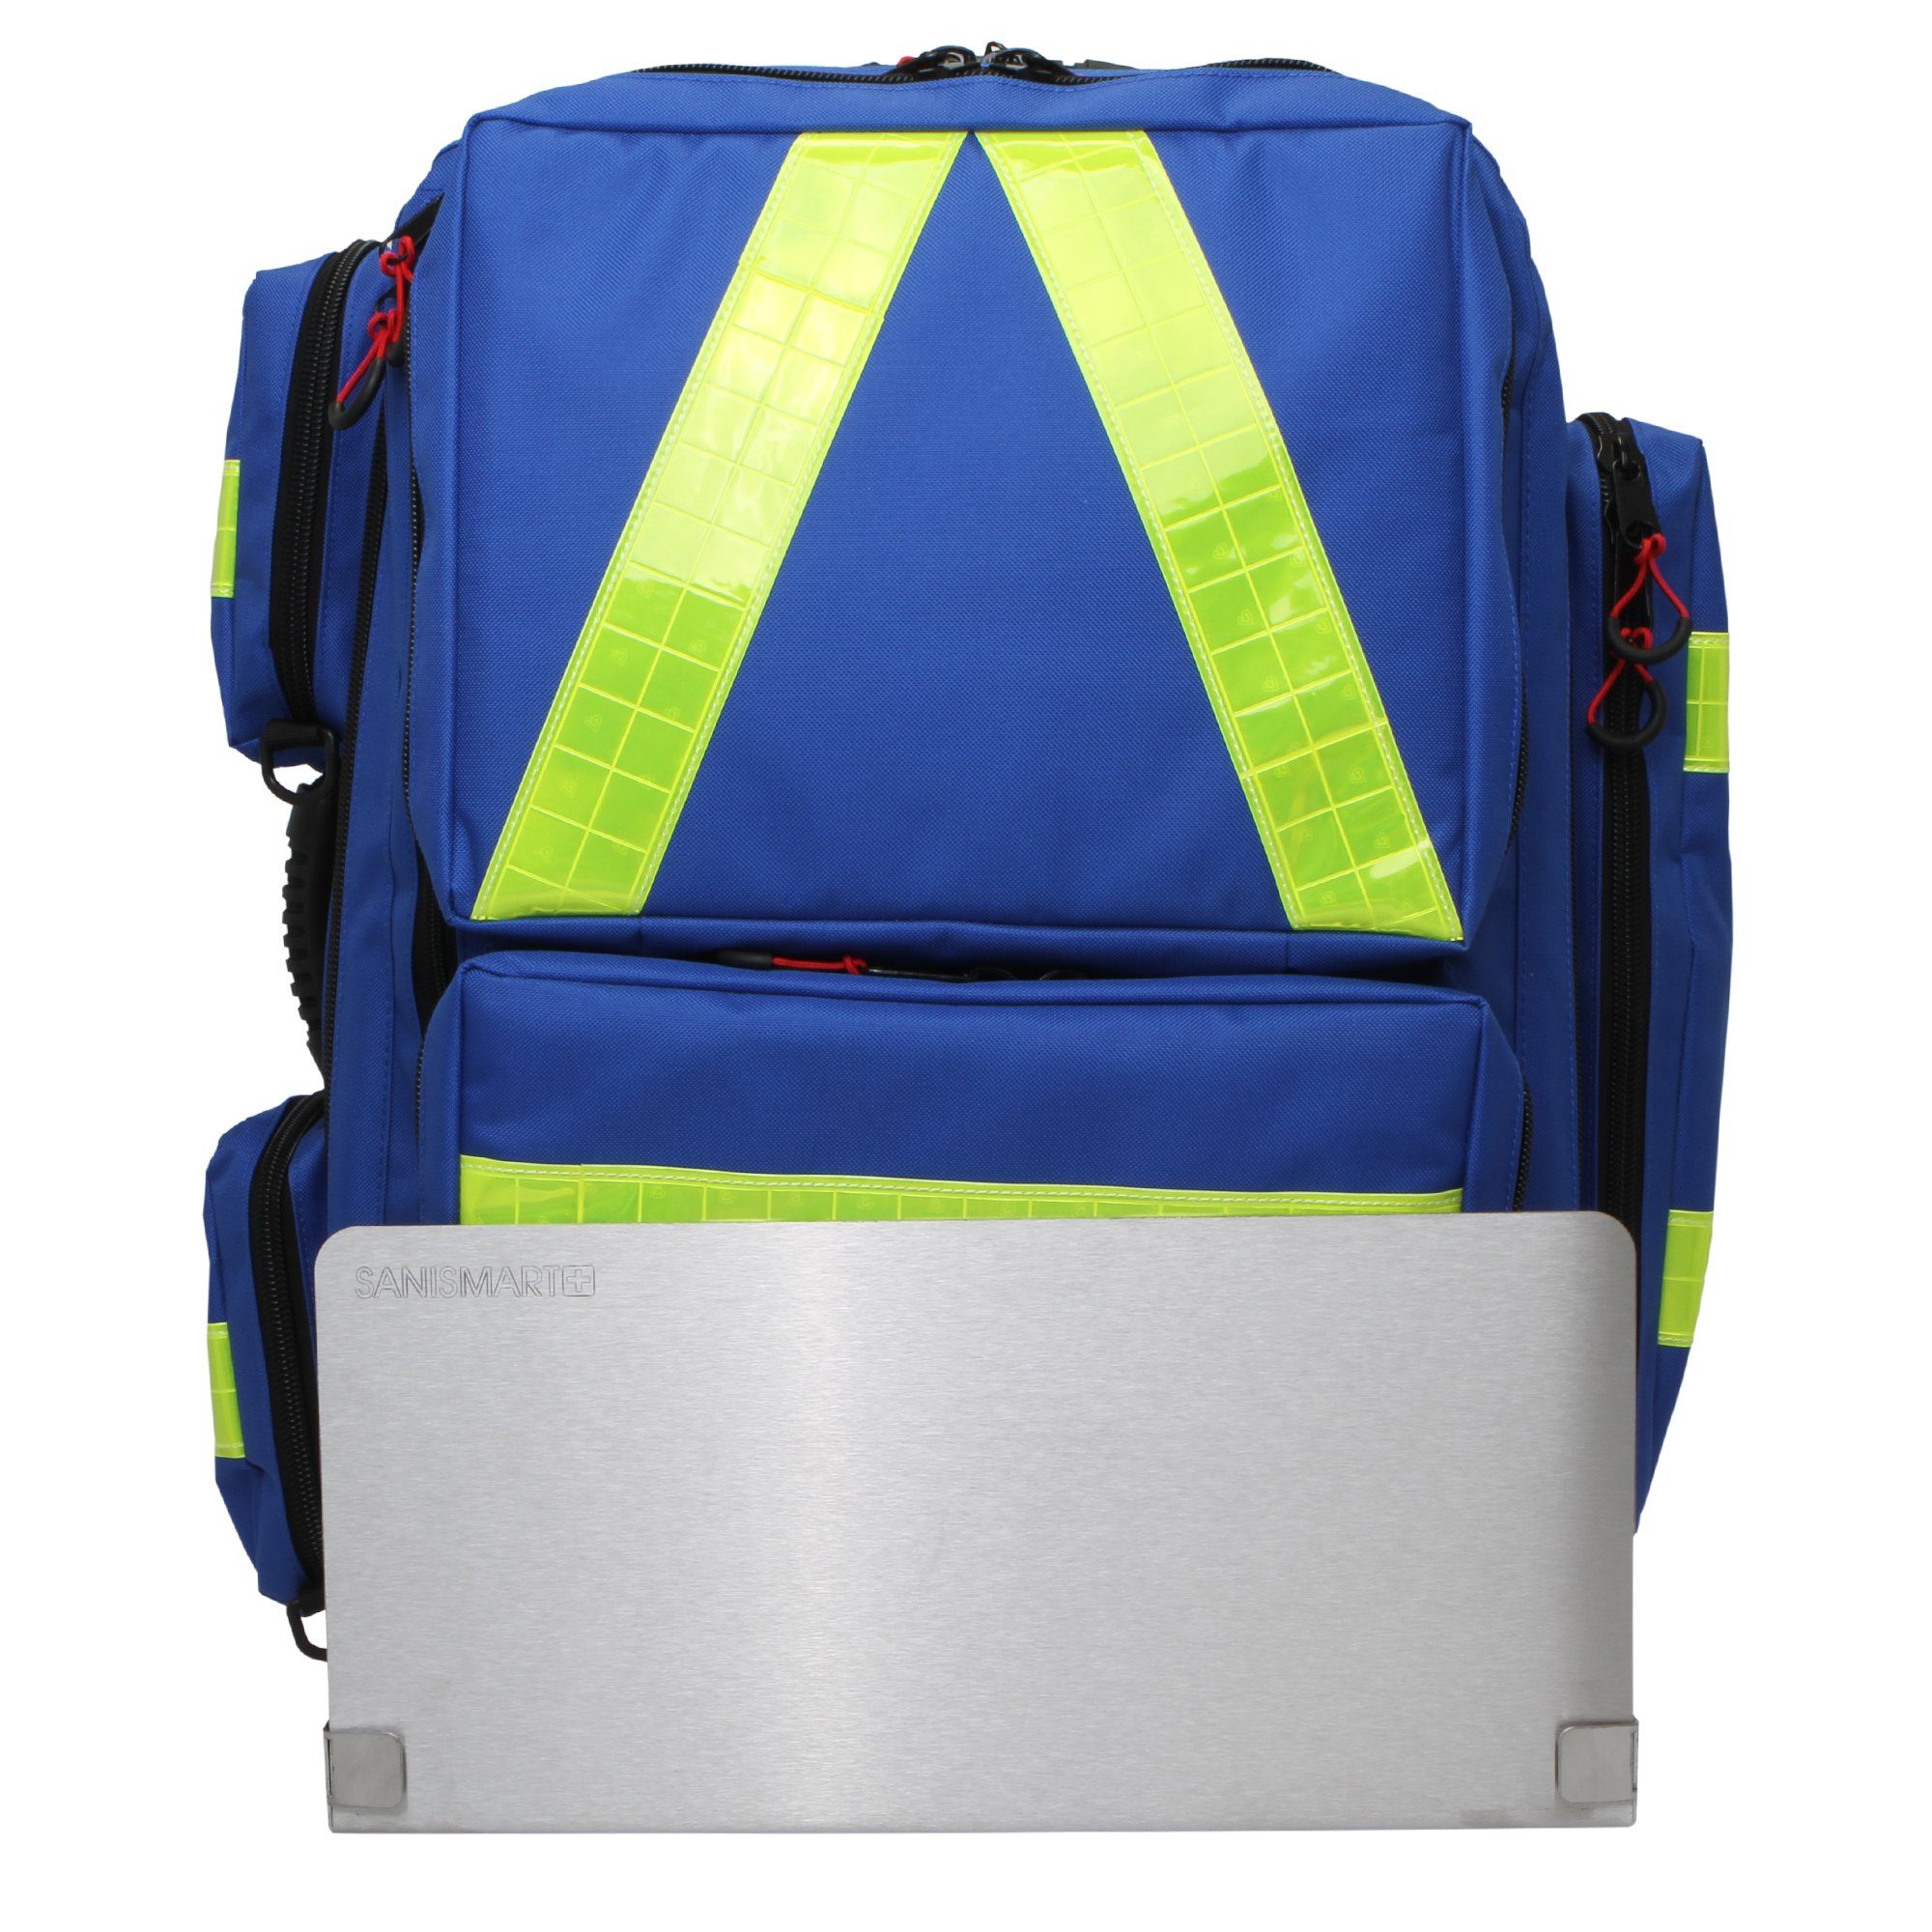 Blau Notfallrucksäcke XL Nylon Arzttasche Wandhalterung SANISMART für Notfallrucksack Medicus mit